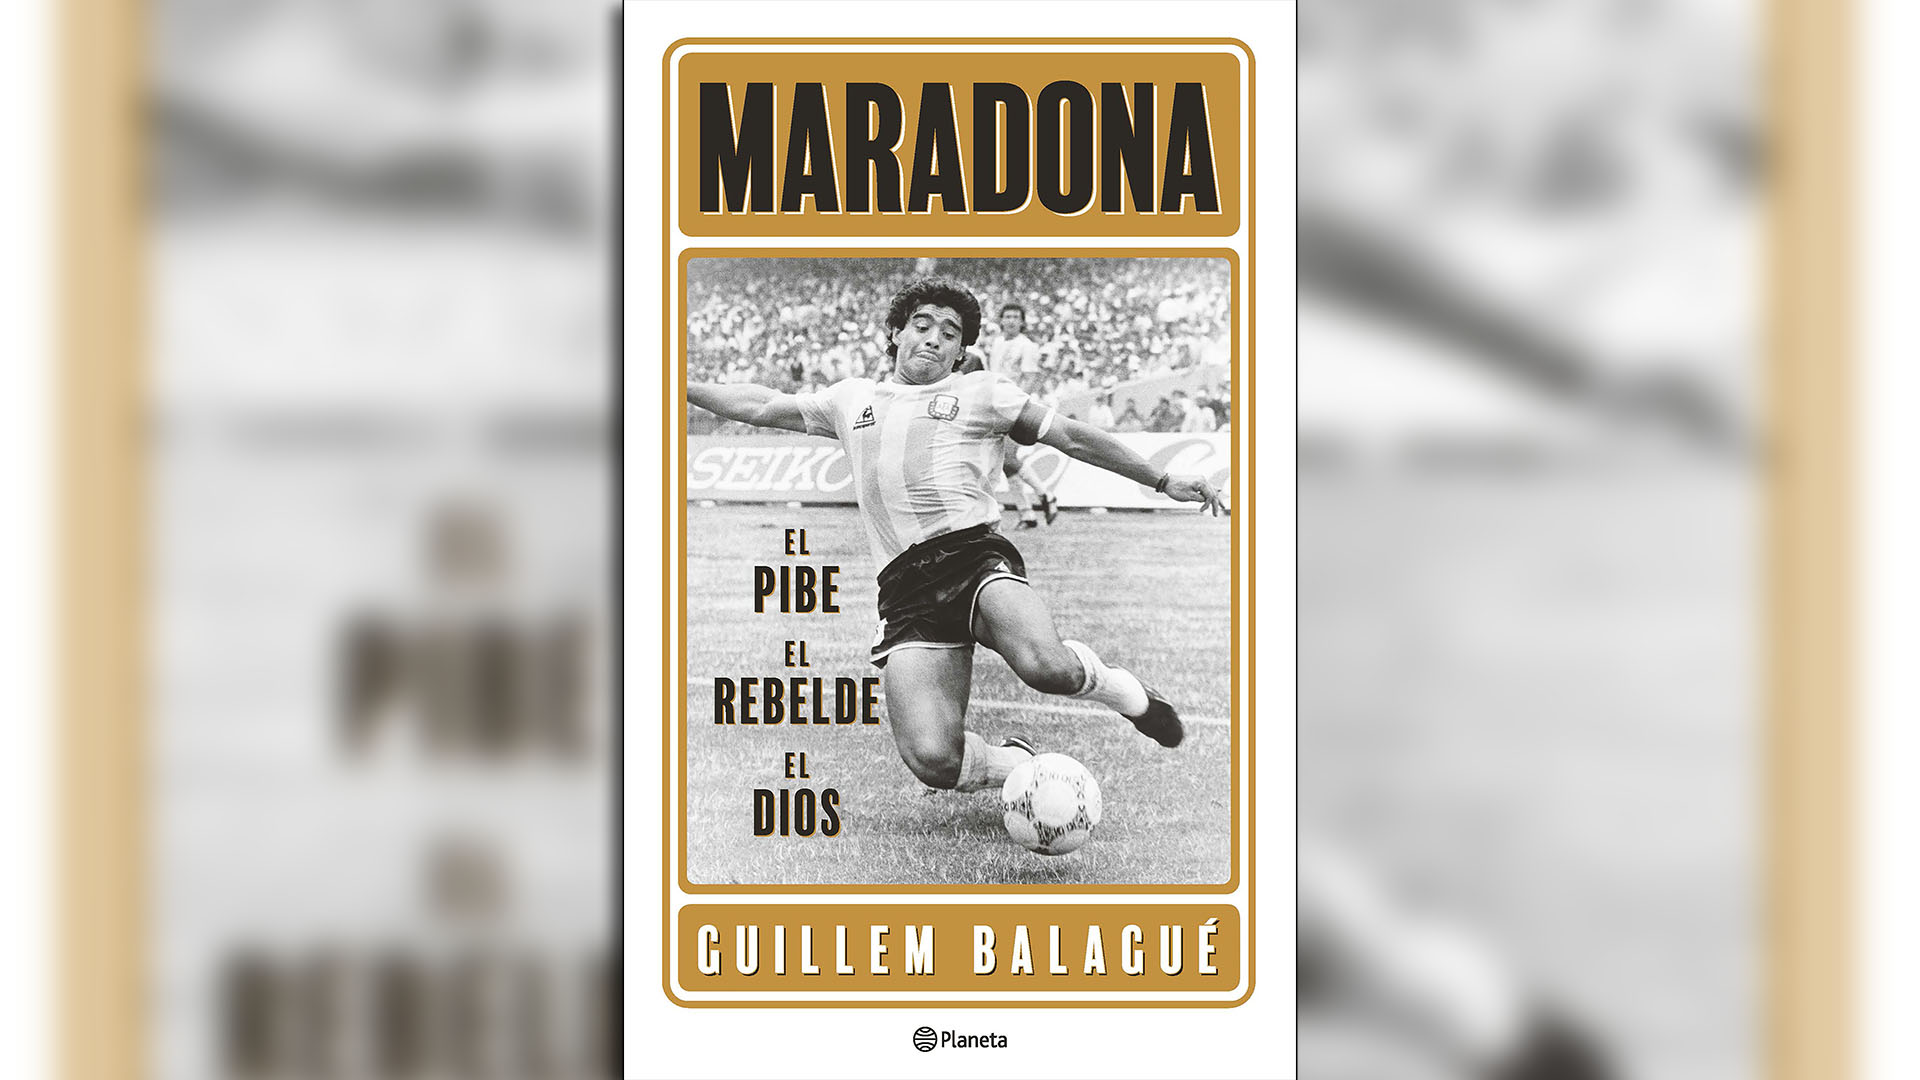 La tapa del libro que Balagué le dedicó a Maradona. Trabajó dos años y medio sobre la obra